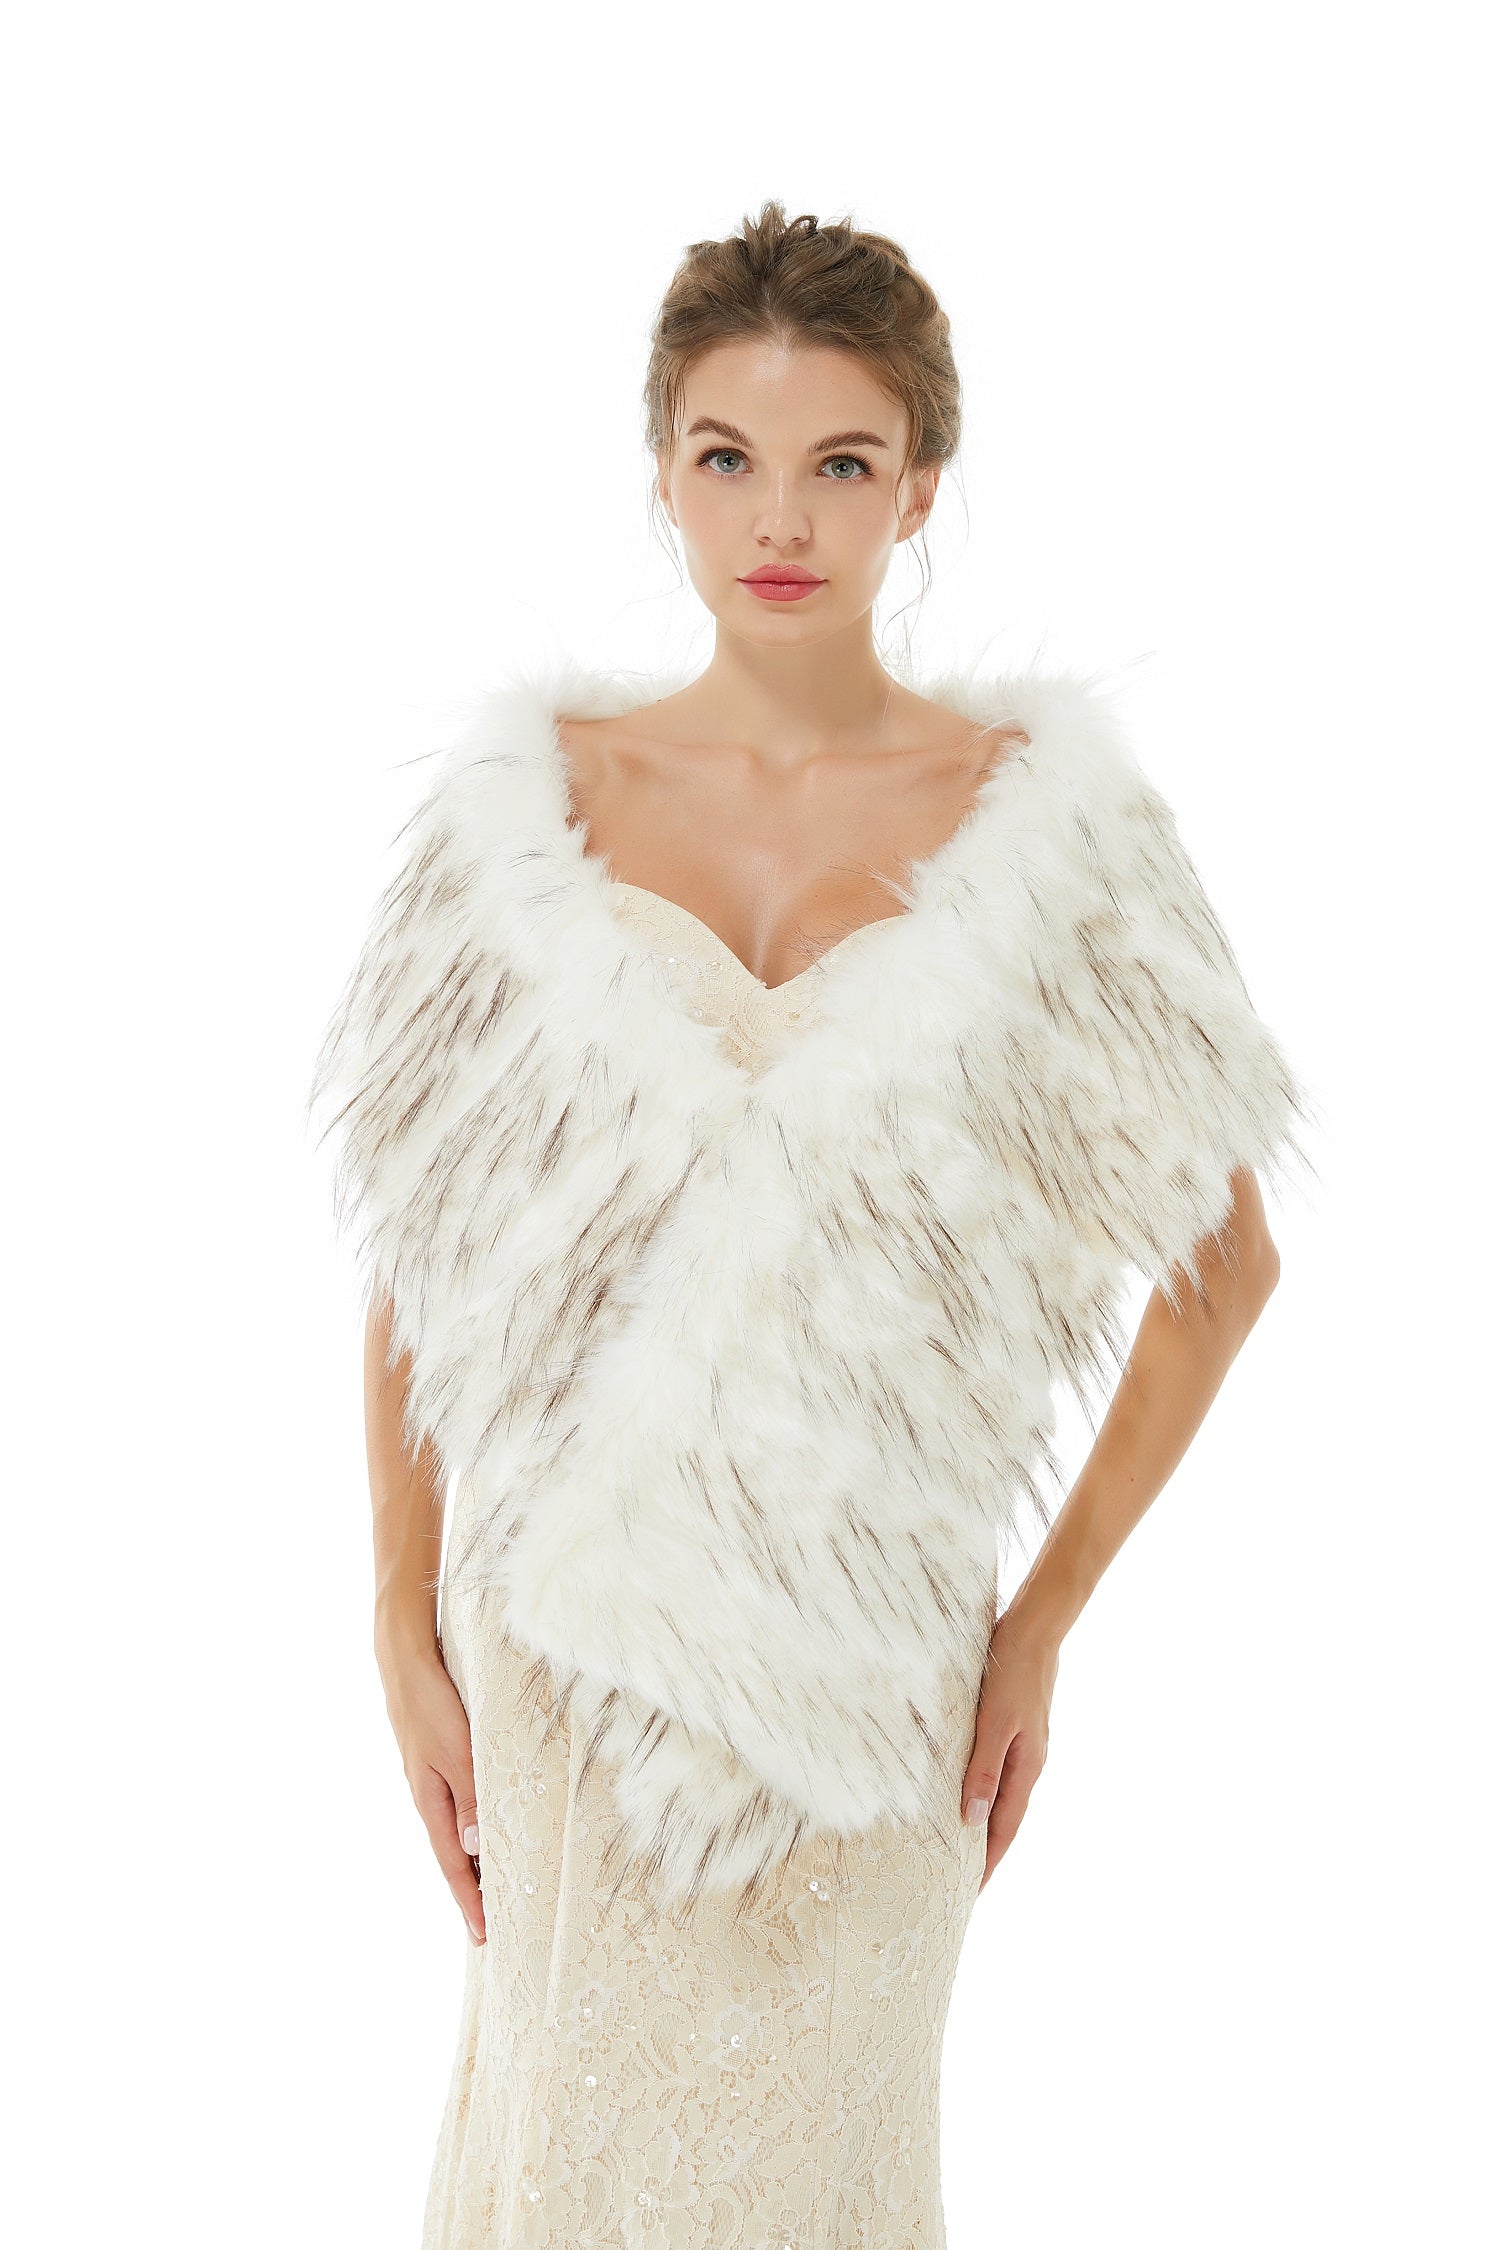 Luxury Women Winter Faux Fur Wedding Wrap - lulusllly